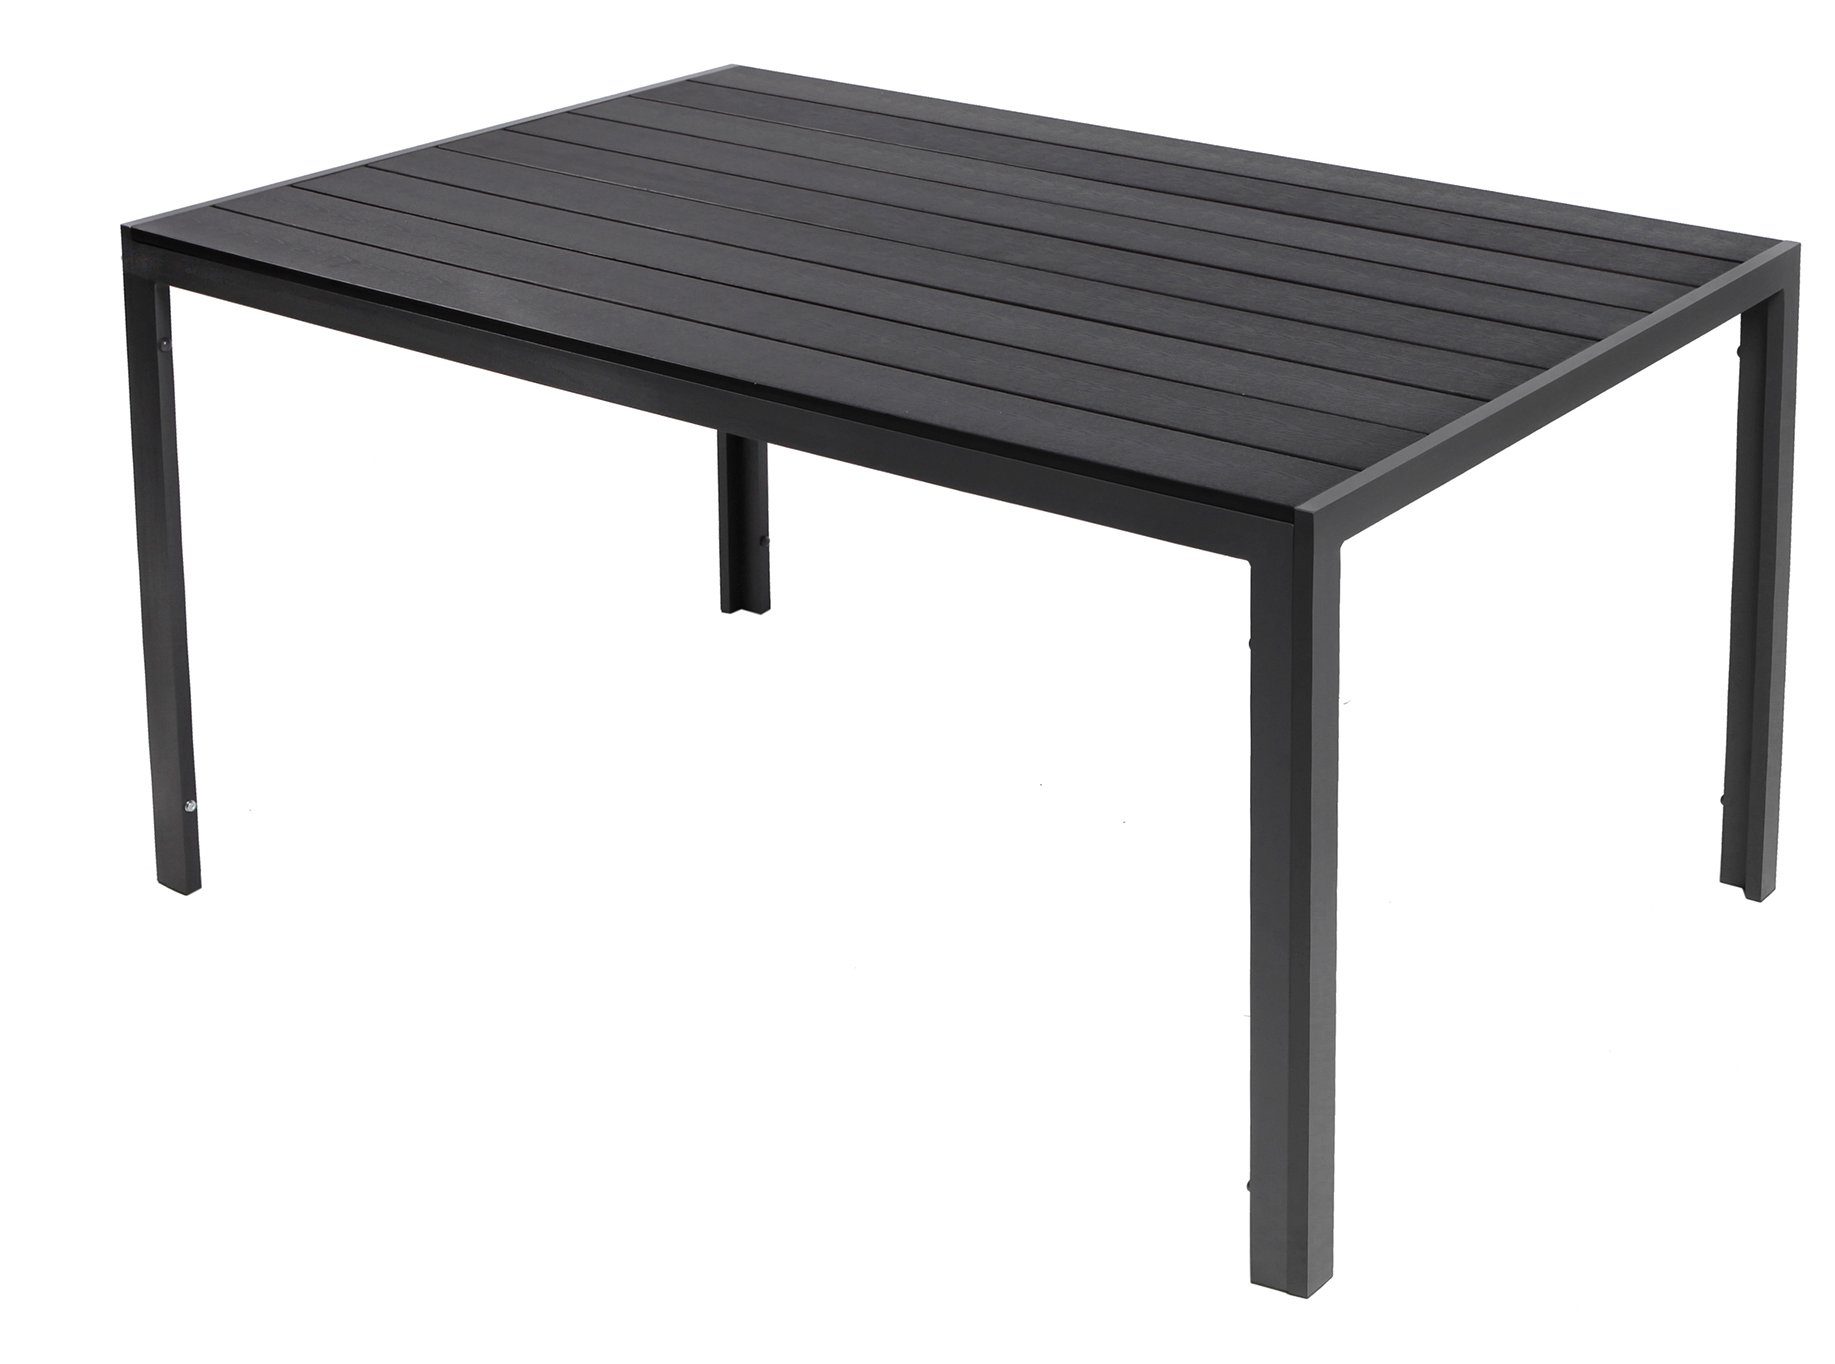 Trendmöbel24 Platte cm 90 Gartentisch mit Gestell Nonwood 150 Aluminium Gartentisch Comfort x